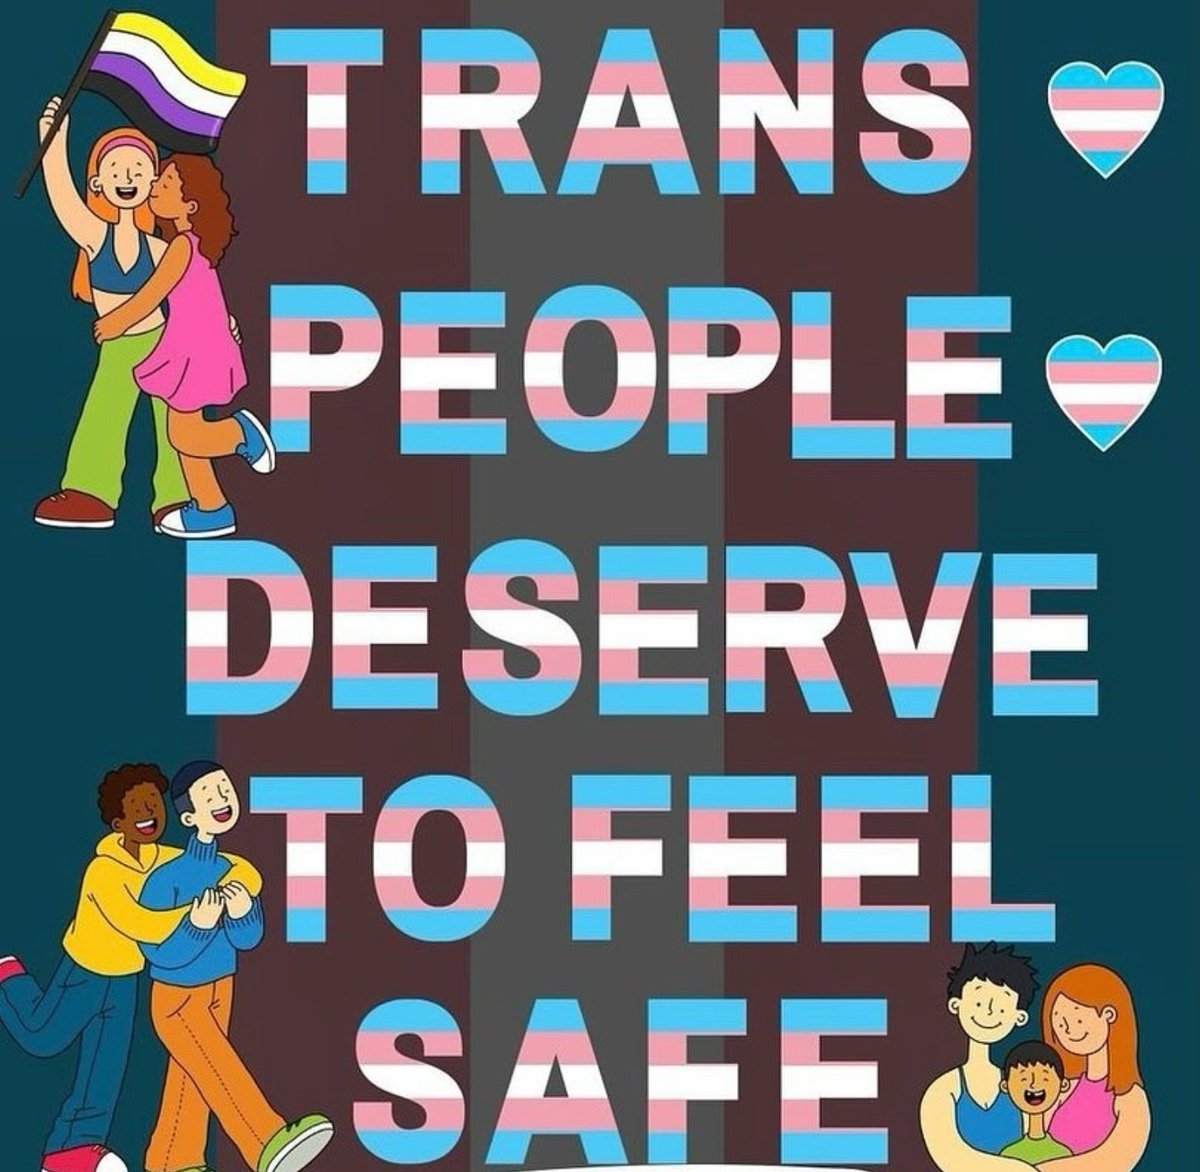 #Transgender #lgbtqia 🏳️‍⚧️🏳️‍⚧️🏳️‍⚧️🏳️‍⚧️🏳️‍⚧️🏳️‍⚧️🏳️‍⚧️🏳️‍⚧️🏳️‍⚧️ 🩷🩷🩷🤍🤍🤍🩵🩵🩵 #TransRightsAreHumanRights